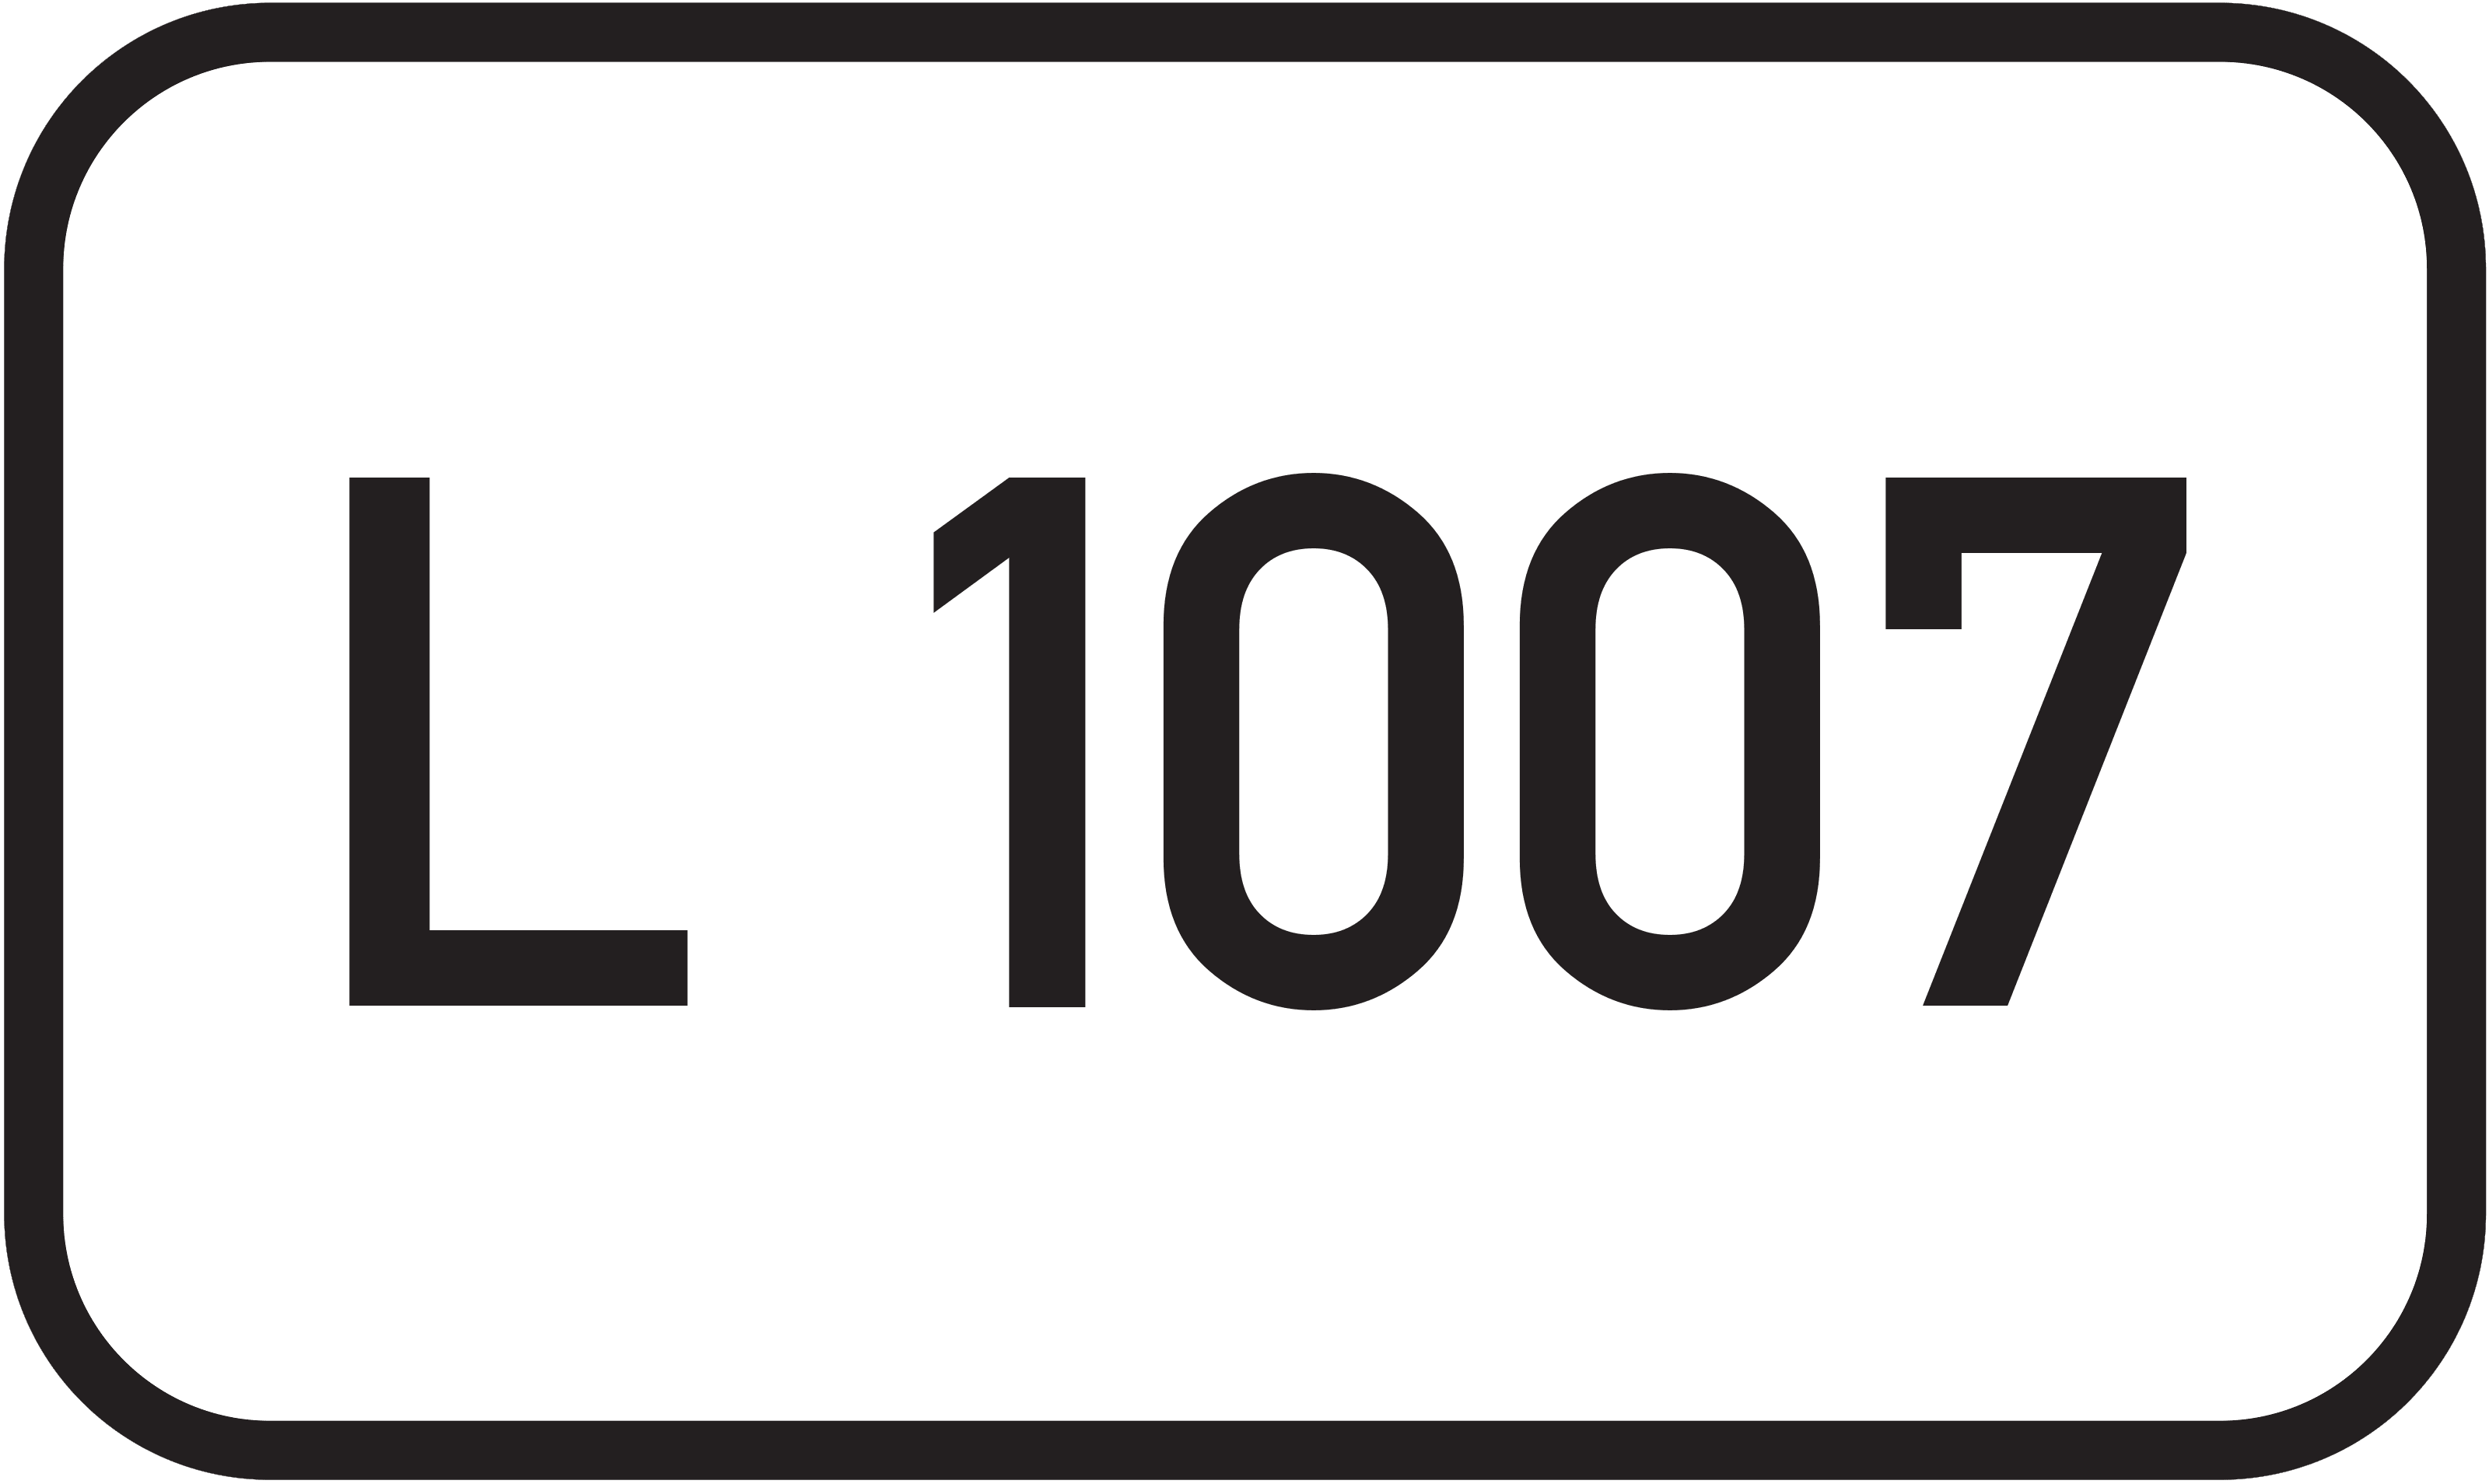 Landesstraße L 1007